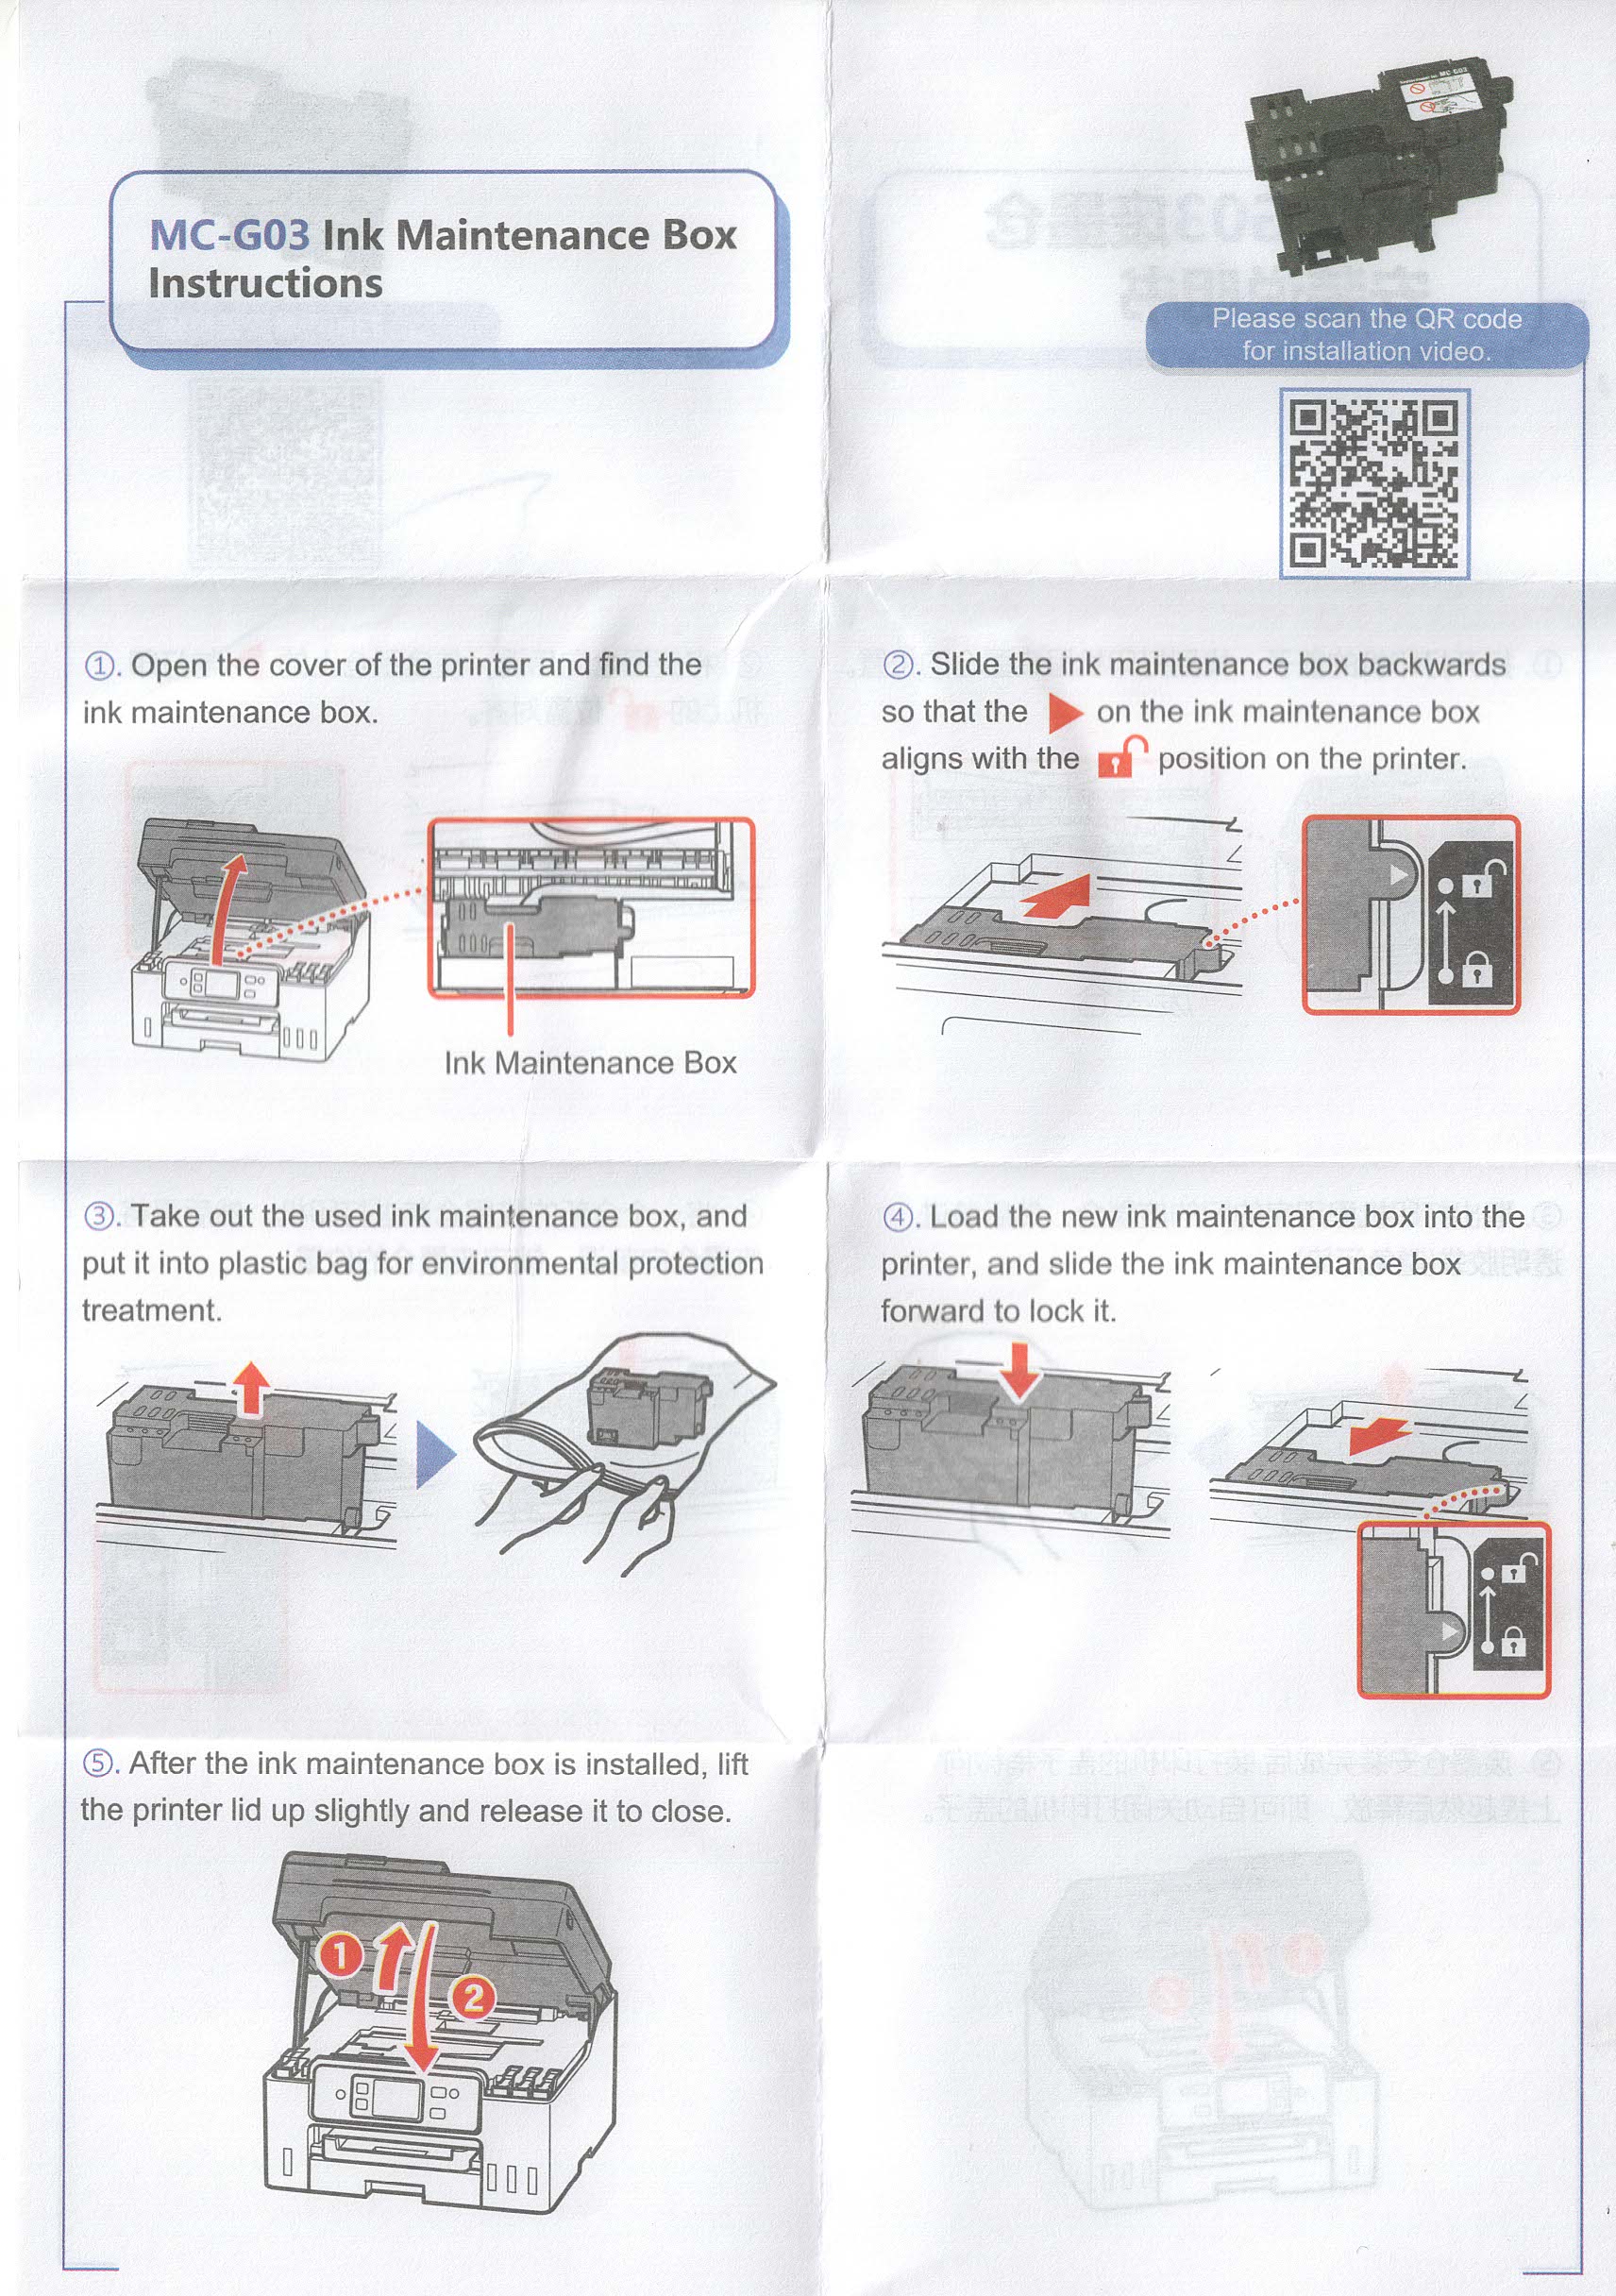 Ocbestjet MC-G03 Waste Ink Tank Pad Kutija za održavanje za Canon MAXIFY GX3010 GX4010 GX3020 GX4070 GX3080 GX4080 GX3090 GX4030 Cijena: 6,63 USD – 6,91 USD Naziv marke: Ocbestjet Tip: Ostalo, Spremnik za tintu za održavanje, Broj modela spremnika za otpadnu tintu: MC- G03 Mjesto podrijetla : Guangdong, Kina prikladni pisač: za Canon Maxify GX3010 GX4010 GX3020 GX4070 GX3080 GX4080 GX3090 Značajka: Potpuno novo jamstvo: 1: 1 Zamijenite neispravno rezervoar za tintu za otpad, spremnik s tintom: Kombinirano s kanonom GI-X1 Kvaliteta tinte: Izvrsna 100% ispitana QC: 100% prethodno testirana dobro prije otpreme Nakon prodaje: Ako postoji bilo kakav problem, podržavamo zamjenu ili povrat novca Dostava: DHL Fedex, ako želite druge kanale, možete se posavjetovati s nama Naziv marke： Ocbestjet primjenjive industrije：Tiskare nakon jamstvenog servisa：Tip marketinga na mreži：Novi proizvod 2023. Vrsta：Spremnik za tintu za održavanje, Spremnik za otpadnu tintu Naziv proizvoda：Ocbestjet MC-G03 Kutija za održavanje spremnika za otpadnu tintu za Canon MAXIFY GX3010 GX4010 GX3020 GX4070 GX3080 GX4080 G X3090 GX4030 Prikladan pisač：Kompatibilan s Canon MAXIFY GX3010 GX4010 GX3020 GX4070 GX3080 GX4080 GX3090 GX4030 GX3040 GX4040 GX3050 GX4050 Značajka：Potpuno novo jamstvo：1:1 Zamjena neispravnog spremnika s tintom za održavanje, otpad Spremnik s tintom nakon prodaje: tehnička podrška, ako postoji problem , Podržavamo zamjenu ili povrat Podržavamo upotrebu relevantnog potrošnog materijala：Kompatibilno s Canon GI-X1 Visoka imitacija originalne tinte Kvaliteta：Izvrsna 100% testirana QC：100% prethodno testirano dobro prije slanja Način dostave：DHL Fedex, ako želite druge kanale, Možete se posavjetovati s nama. Ključne značajke i prednosti: 1. Pouzdana izvedba: Canon MC-G03 spremnici za održavanje dizajnirani su za pružanje pouzdane i dosljedne izvedbe.Sprječava začepljenja i probleme s ispisnom glavom, osiguravajući glatko ispisivanje.2. Dug vijek trajanja: Uz MC-G03 spremnike s tintom, vaš Canon MAXIFY pisač imat će dulji vijek trajanja.Budući da učinkovito održava kvalitetu ispisa, smanjuje potrebu za potencijalno skupim popravcima ili zamjenama.3. Poboljšajte kvalitetu ispisa: Uživajte u vrhunskoj kvaliteti ispisa s MC-G03 uloškom za održavanje.Pomaže u poboljšanju jasnoće slike, točnosti boja i ukupne živosti.Bilo da ispisujete dokumente, fotografije ili grafike, svaki će detalj oživjeti.4. Lako održavanje: Jedna od glavnih prednosti MC-G03 uloška je jednostavan proces održavanja.Redovitom zamjenom spremnika s tintom možete učinkovito očistiti ispisne glave, spriječiti začepljenja i osigurati dosljedan protok tinte.To poboljšava performanse i smanjuje vrijeme zastoja.5. Isplativost: Ulaganje u spremnike za održavanje Canon MC-G03 može vam dugoročno uštedjeti novac.Pomaže produžiti vijek trajanja pisača i smanjuje potrebu za čestim popravcima ili zamjenama.Osim toga, održavanjem najbolje moguće kvalitete ispisa možete izbjeći rasipanje tinte i papira.6. Kompatibilnost: MC-G03 uložak za održavanje posebno je dizajniran da bude kompatibilan s raznim Canon MAXIFY pisačima.To osigurava da ga možete jednostavno integrirati u svoje postojeće postavke ispisa bez problema s kompatibilnošću.7. Jednostavan za instalaciju: Postupak zamjene MC-G03 uloška za održavanje vrlo je jednostavan.Uložak je jednostavan za korištenje i lako se postavlja u samo nekoliko koraka.To vam omogućuje da brzo nastavite s ispisom bez nepotrebnih odgoda.u zaključku: Canon MC-G03 spremnici za održavanje ne samo da osiguravaju vrhunsku kvalitetu ispisa, već i značajno produžuju vijek trajanja vaših Canon MAXIFY pisača.Sa svojom pouzdanom izvedbom, jednostavnom instalacijom i ekonomičnim održavanjem, ovaj spremnik s tintom idealan je izbor za svakoga tko traži vrhunske rezultate ispisa iz dana u dan.Nadogradite svoje iskustvo ispisa danas s MC-G03 spremnikom za održavanje.